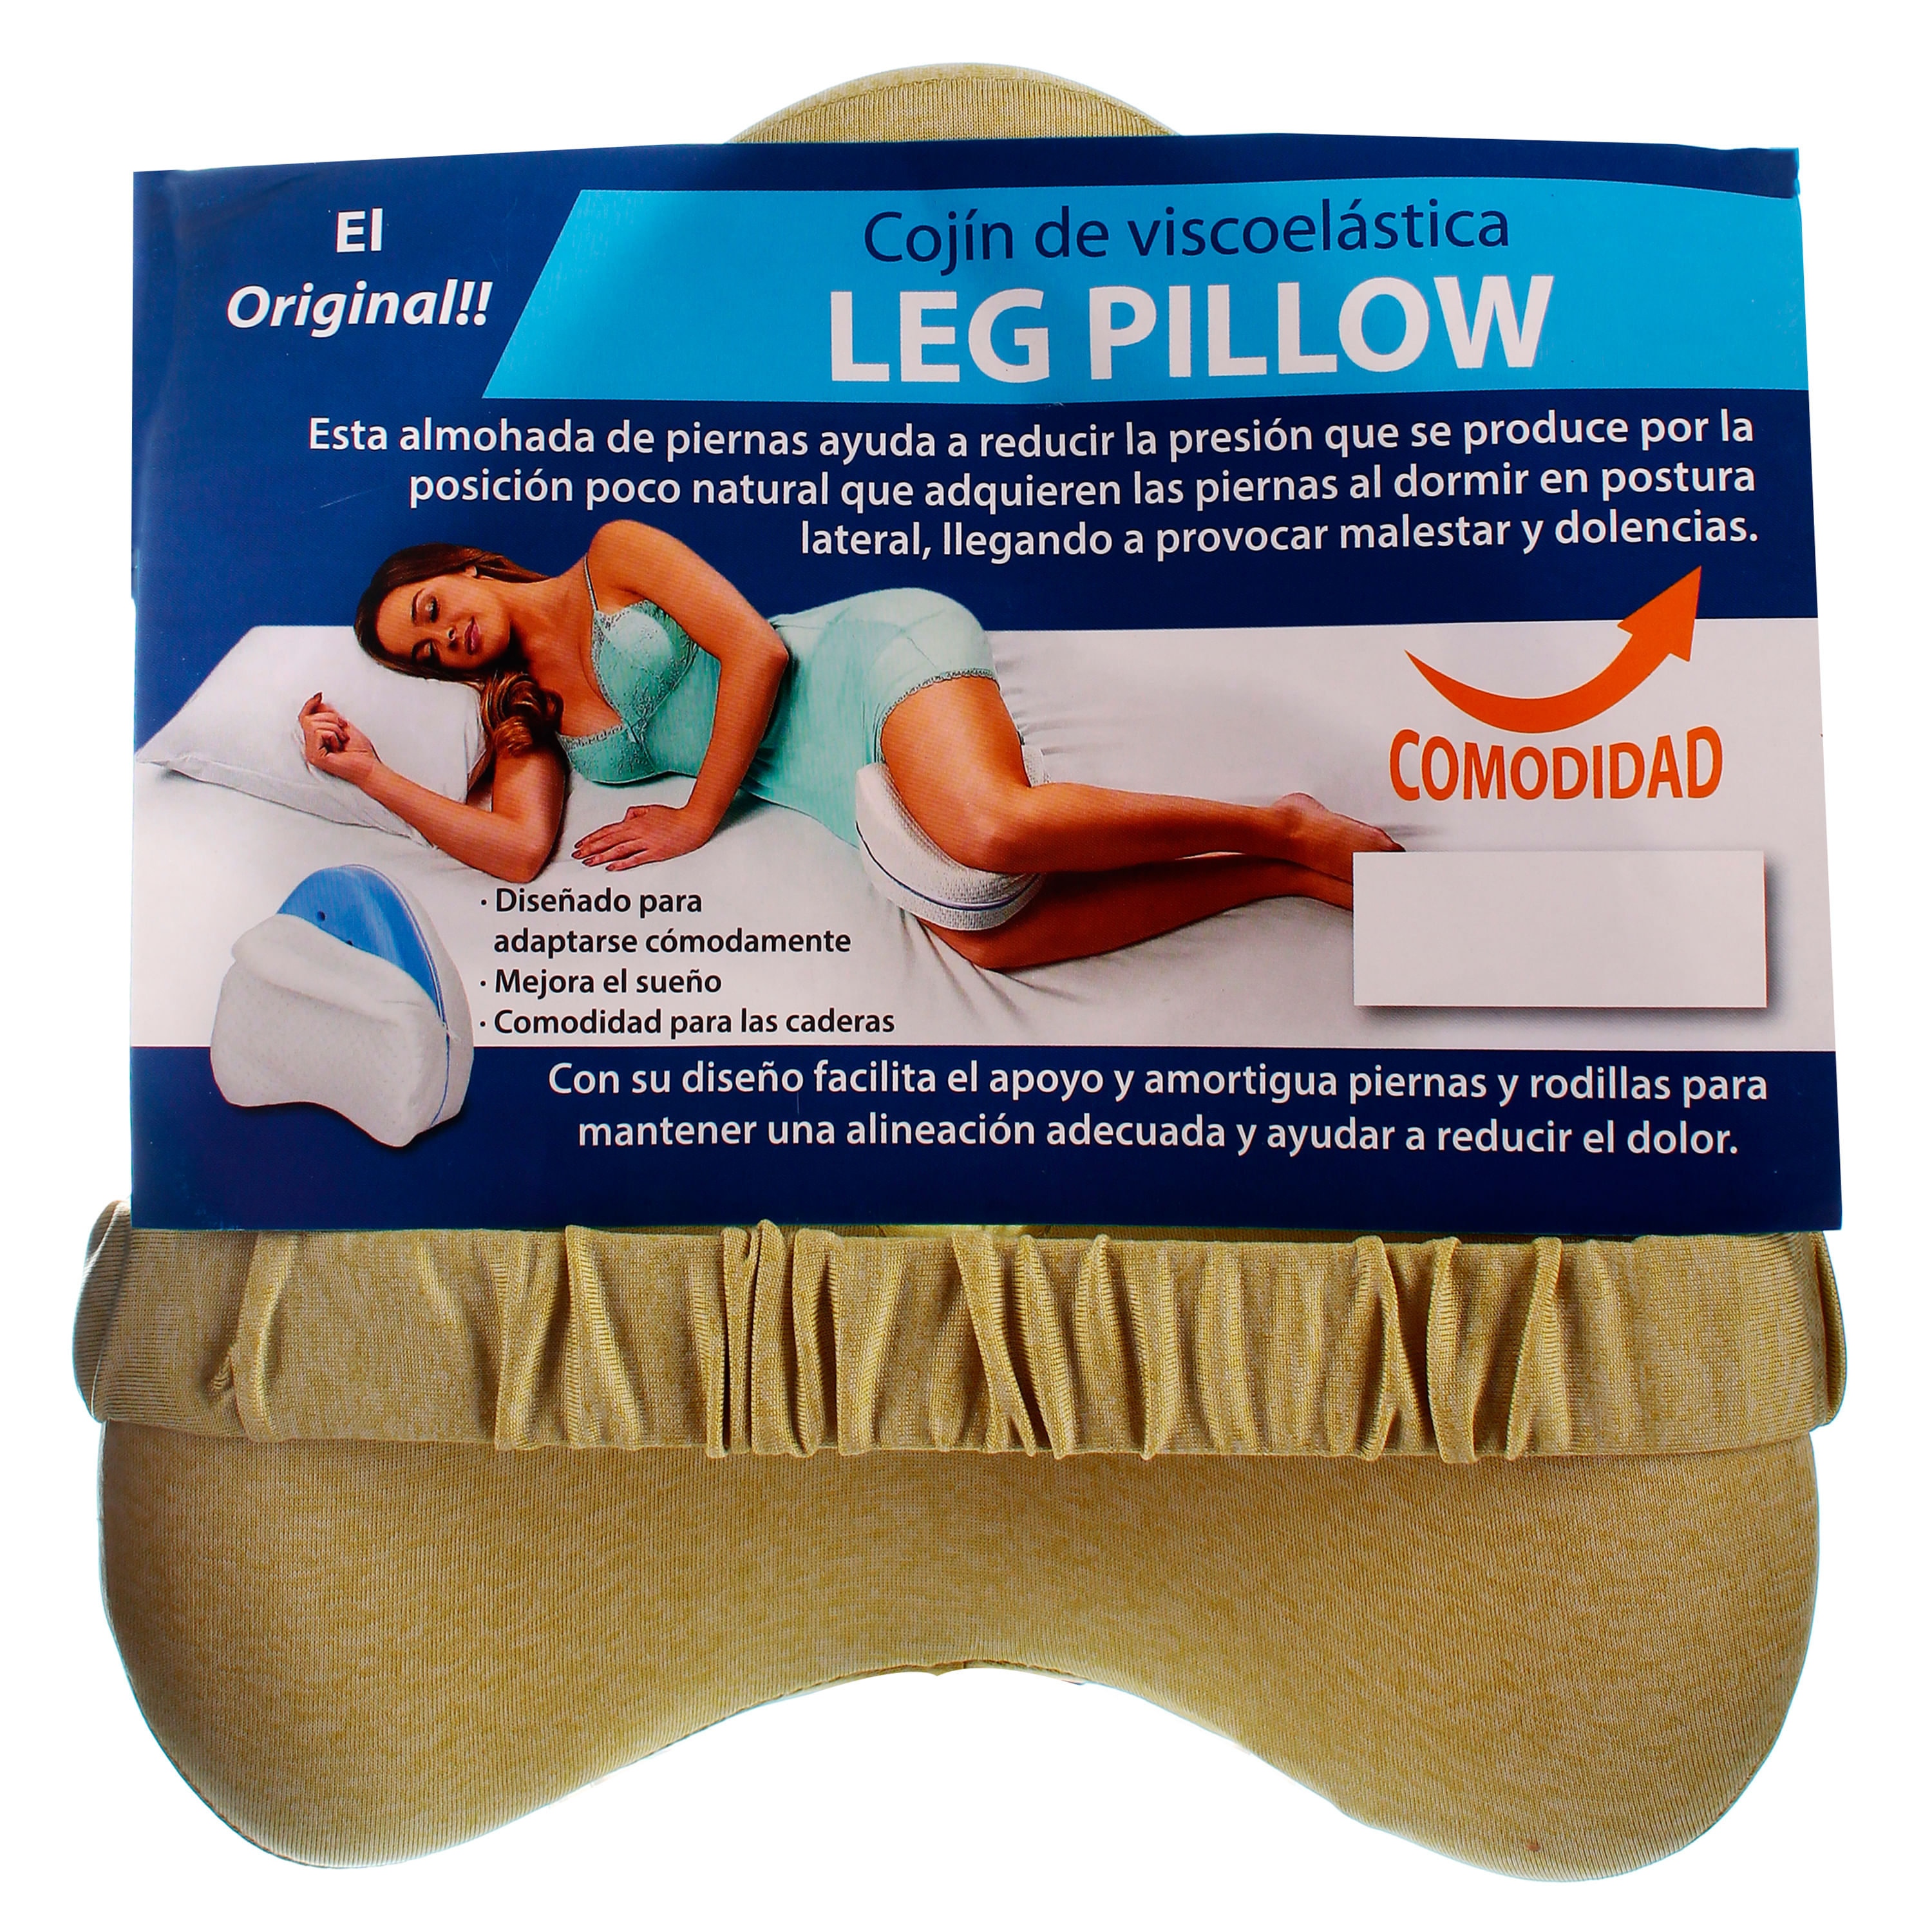 Las almohadas para las piernas de 15 euros que te ayudan a dormir